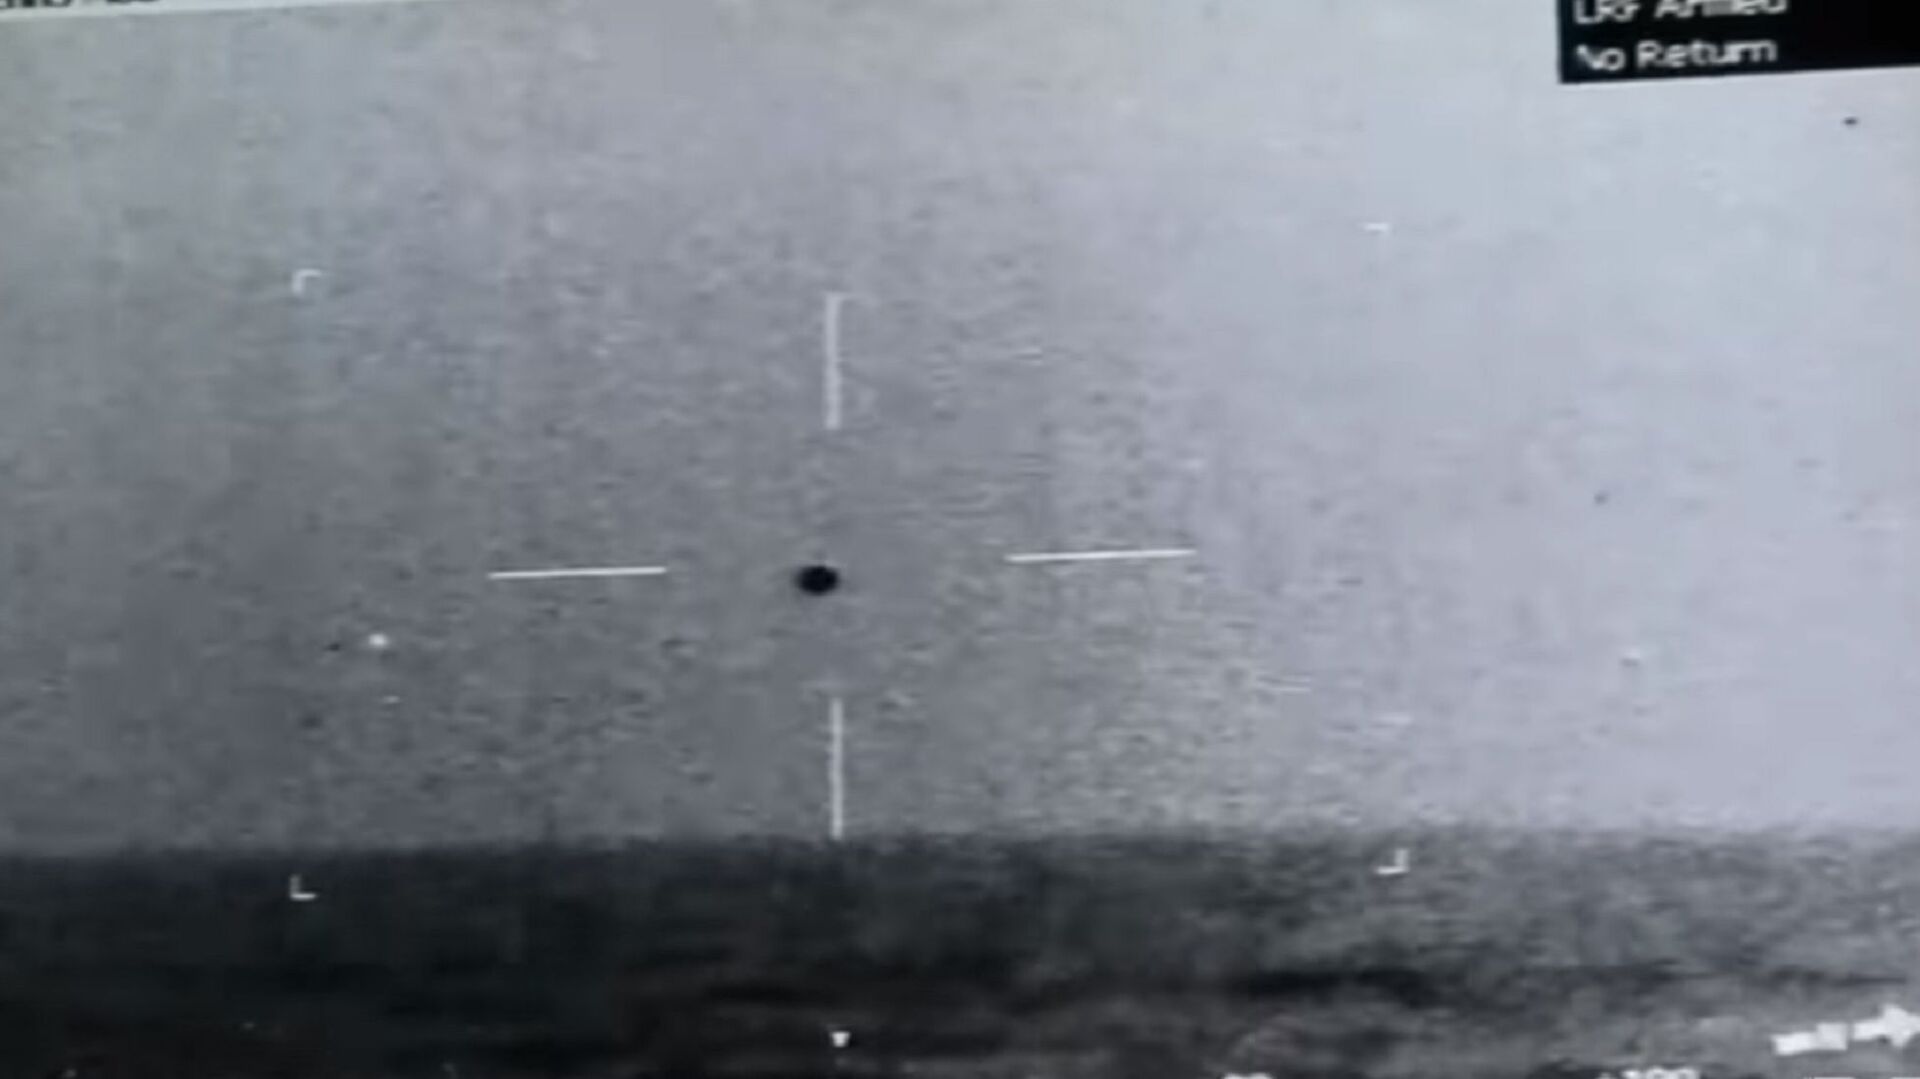 Снимак НЛО изнад мора у близини Калифорније који је начинила америчка ратна морнарица - Sputnik Србија, 1920, 15.05.2021